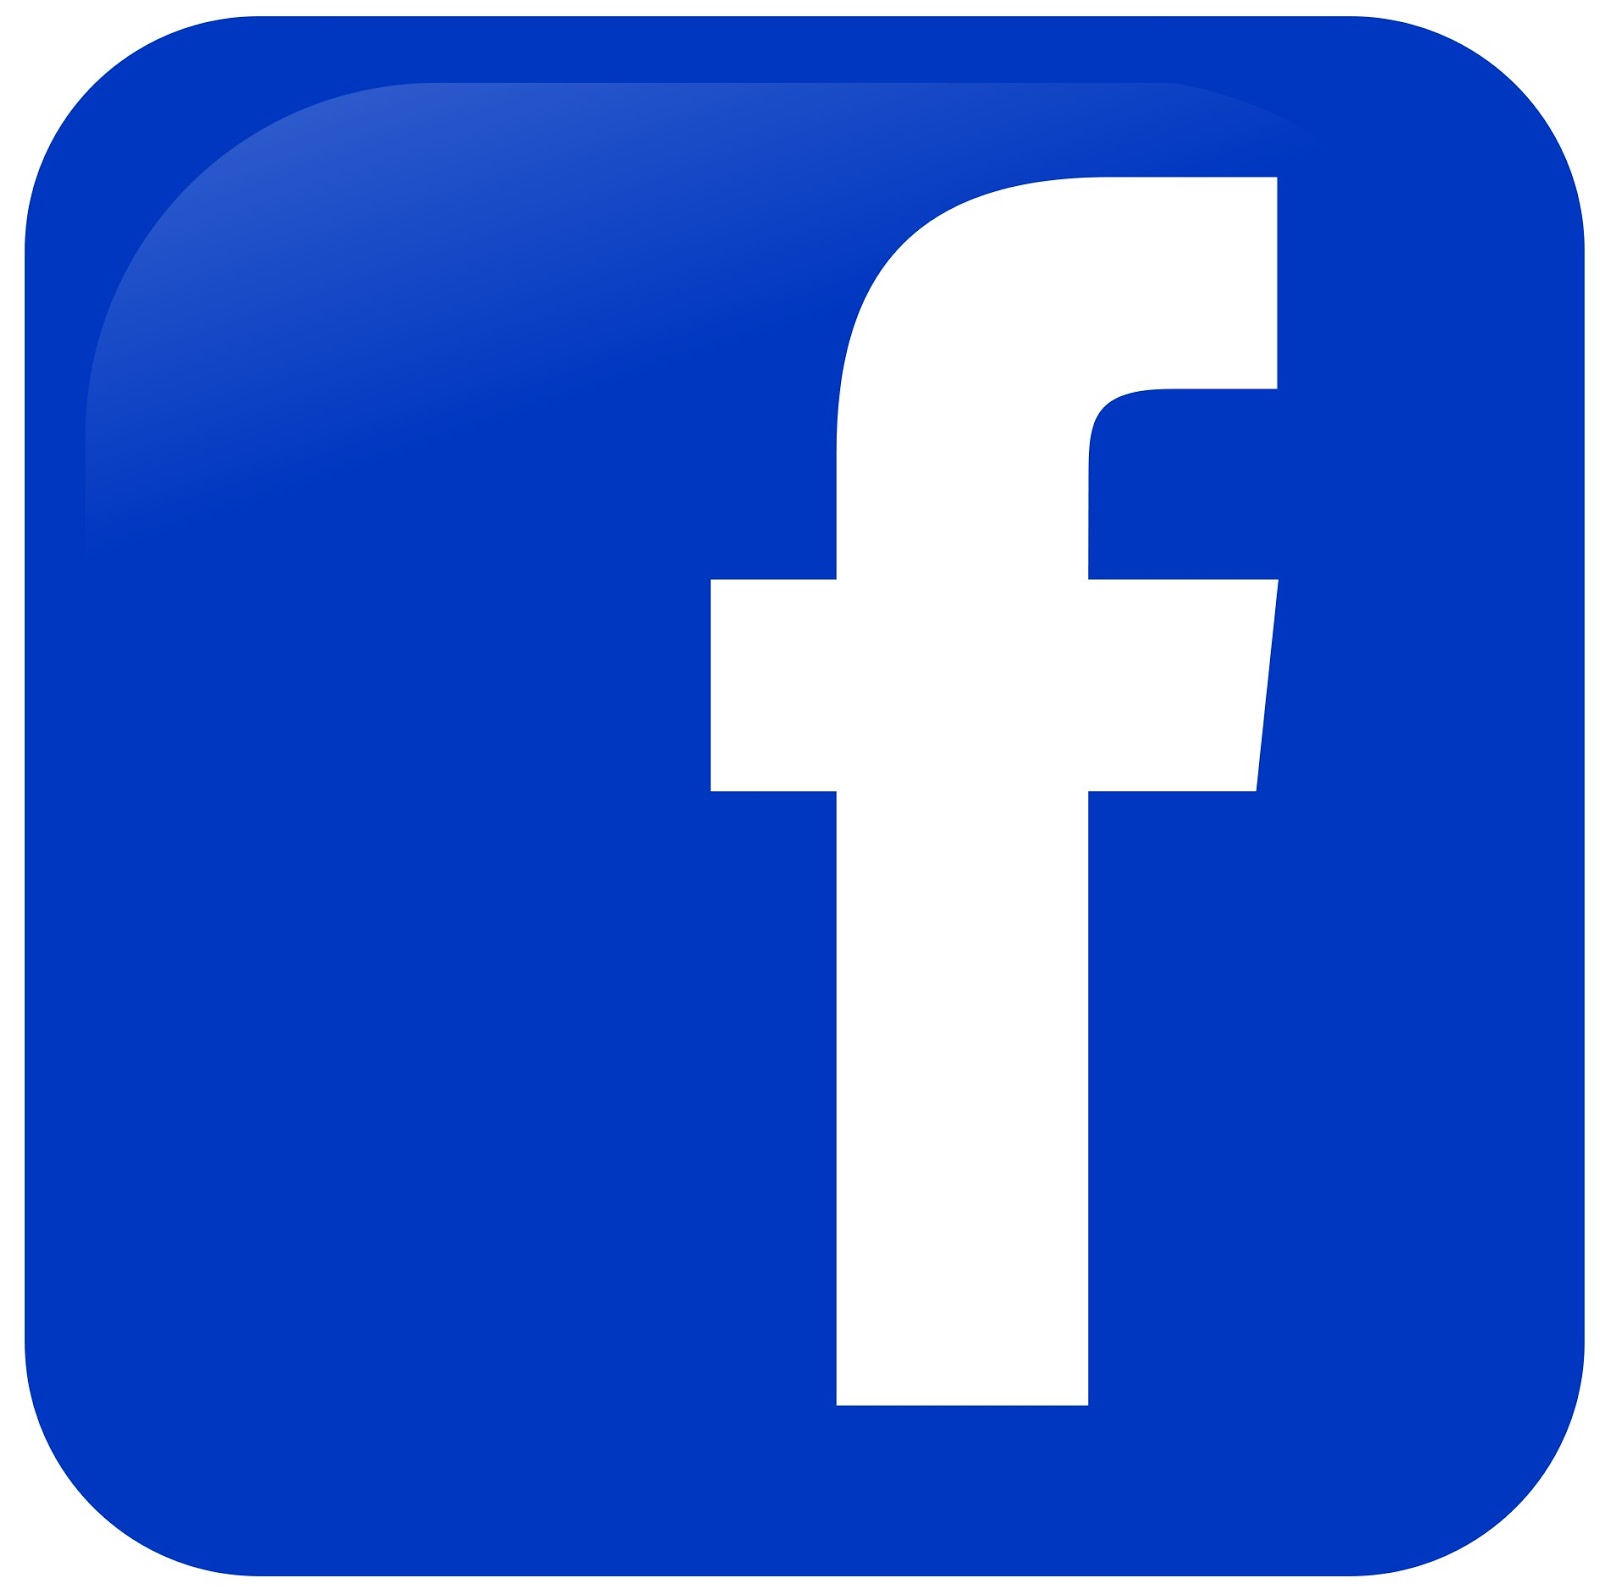 All Logos: Facebook Logo